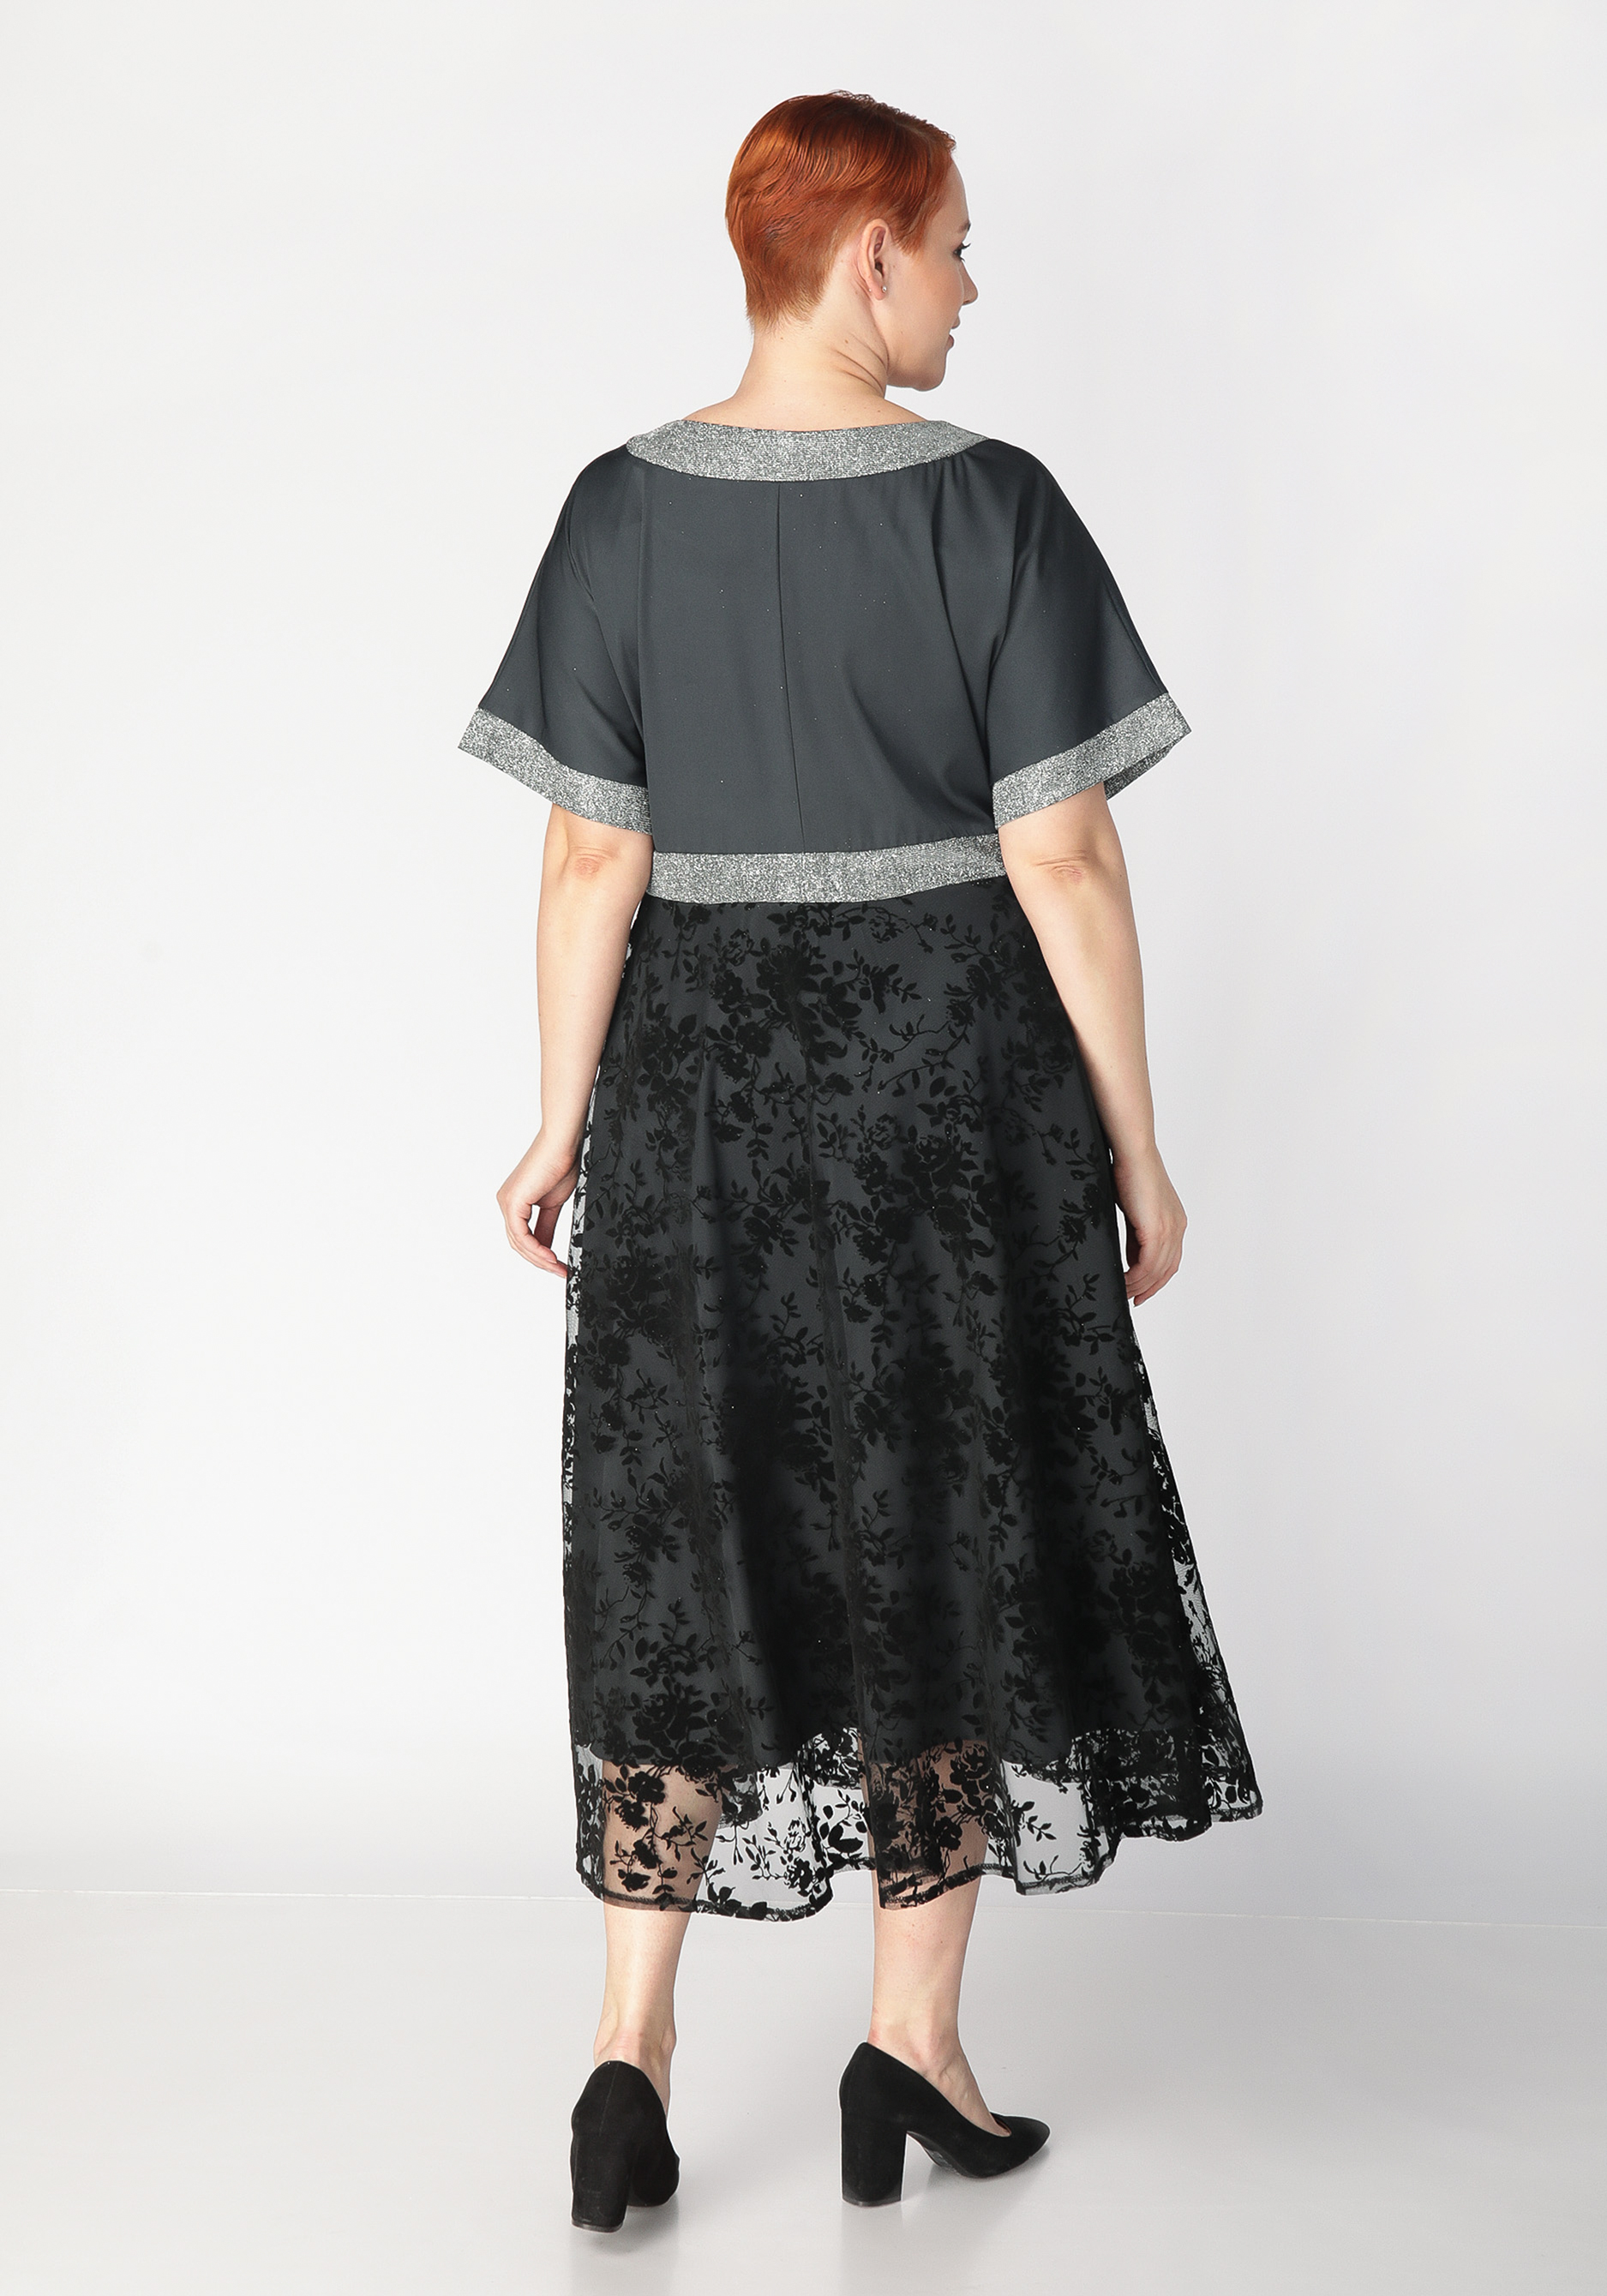 Платье с объемным принтом Mio Imperatrice, цвет баклажановый, размер 54 - фото 9